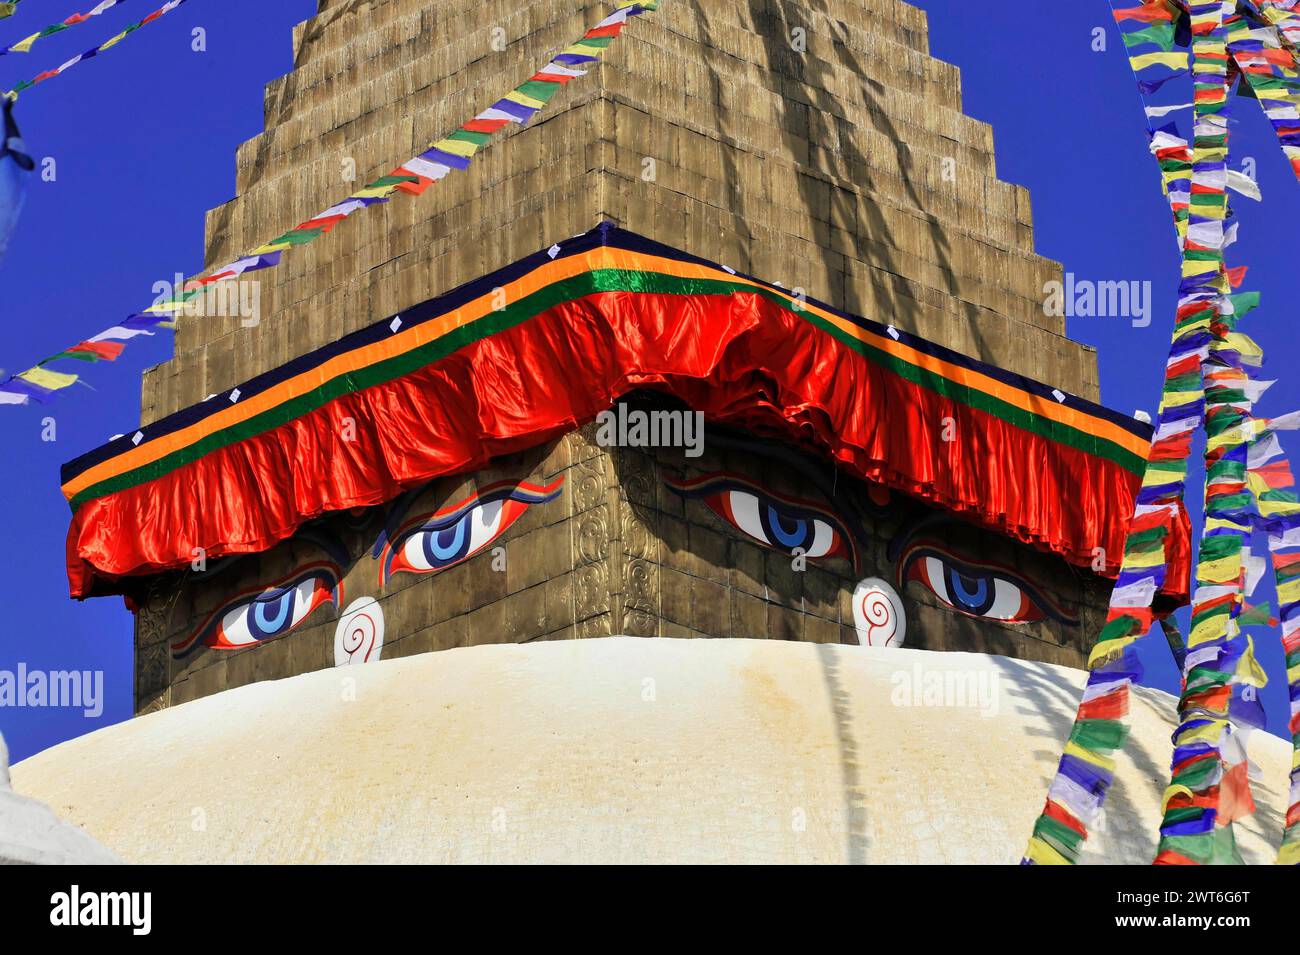 Bodnath oder Boudhanath oder Boudha Stupa, UNESCO-Weltkulturerbe, Nahaufnahme der Stupa mit den ikonischen Augen Buddhas und farbenfrohen Dekorationen Stockfoto